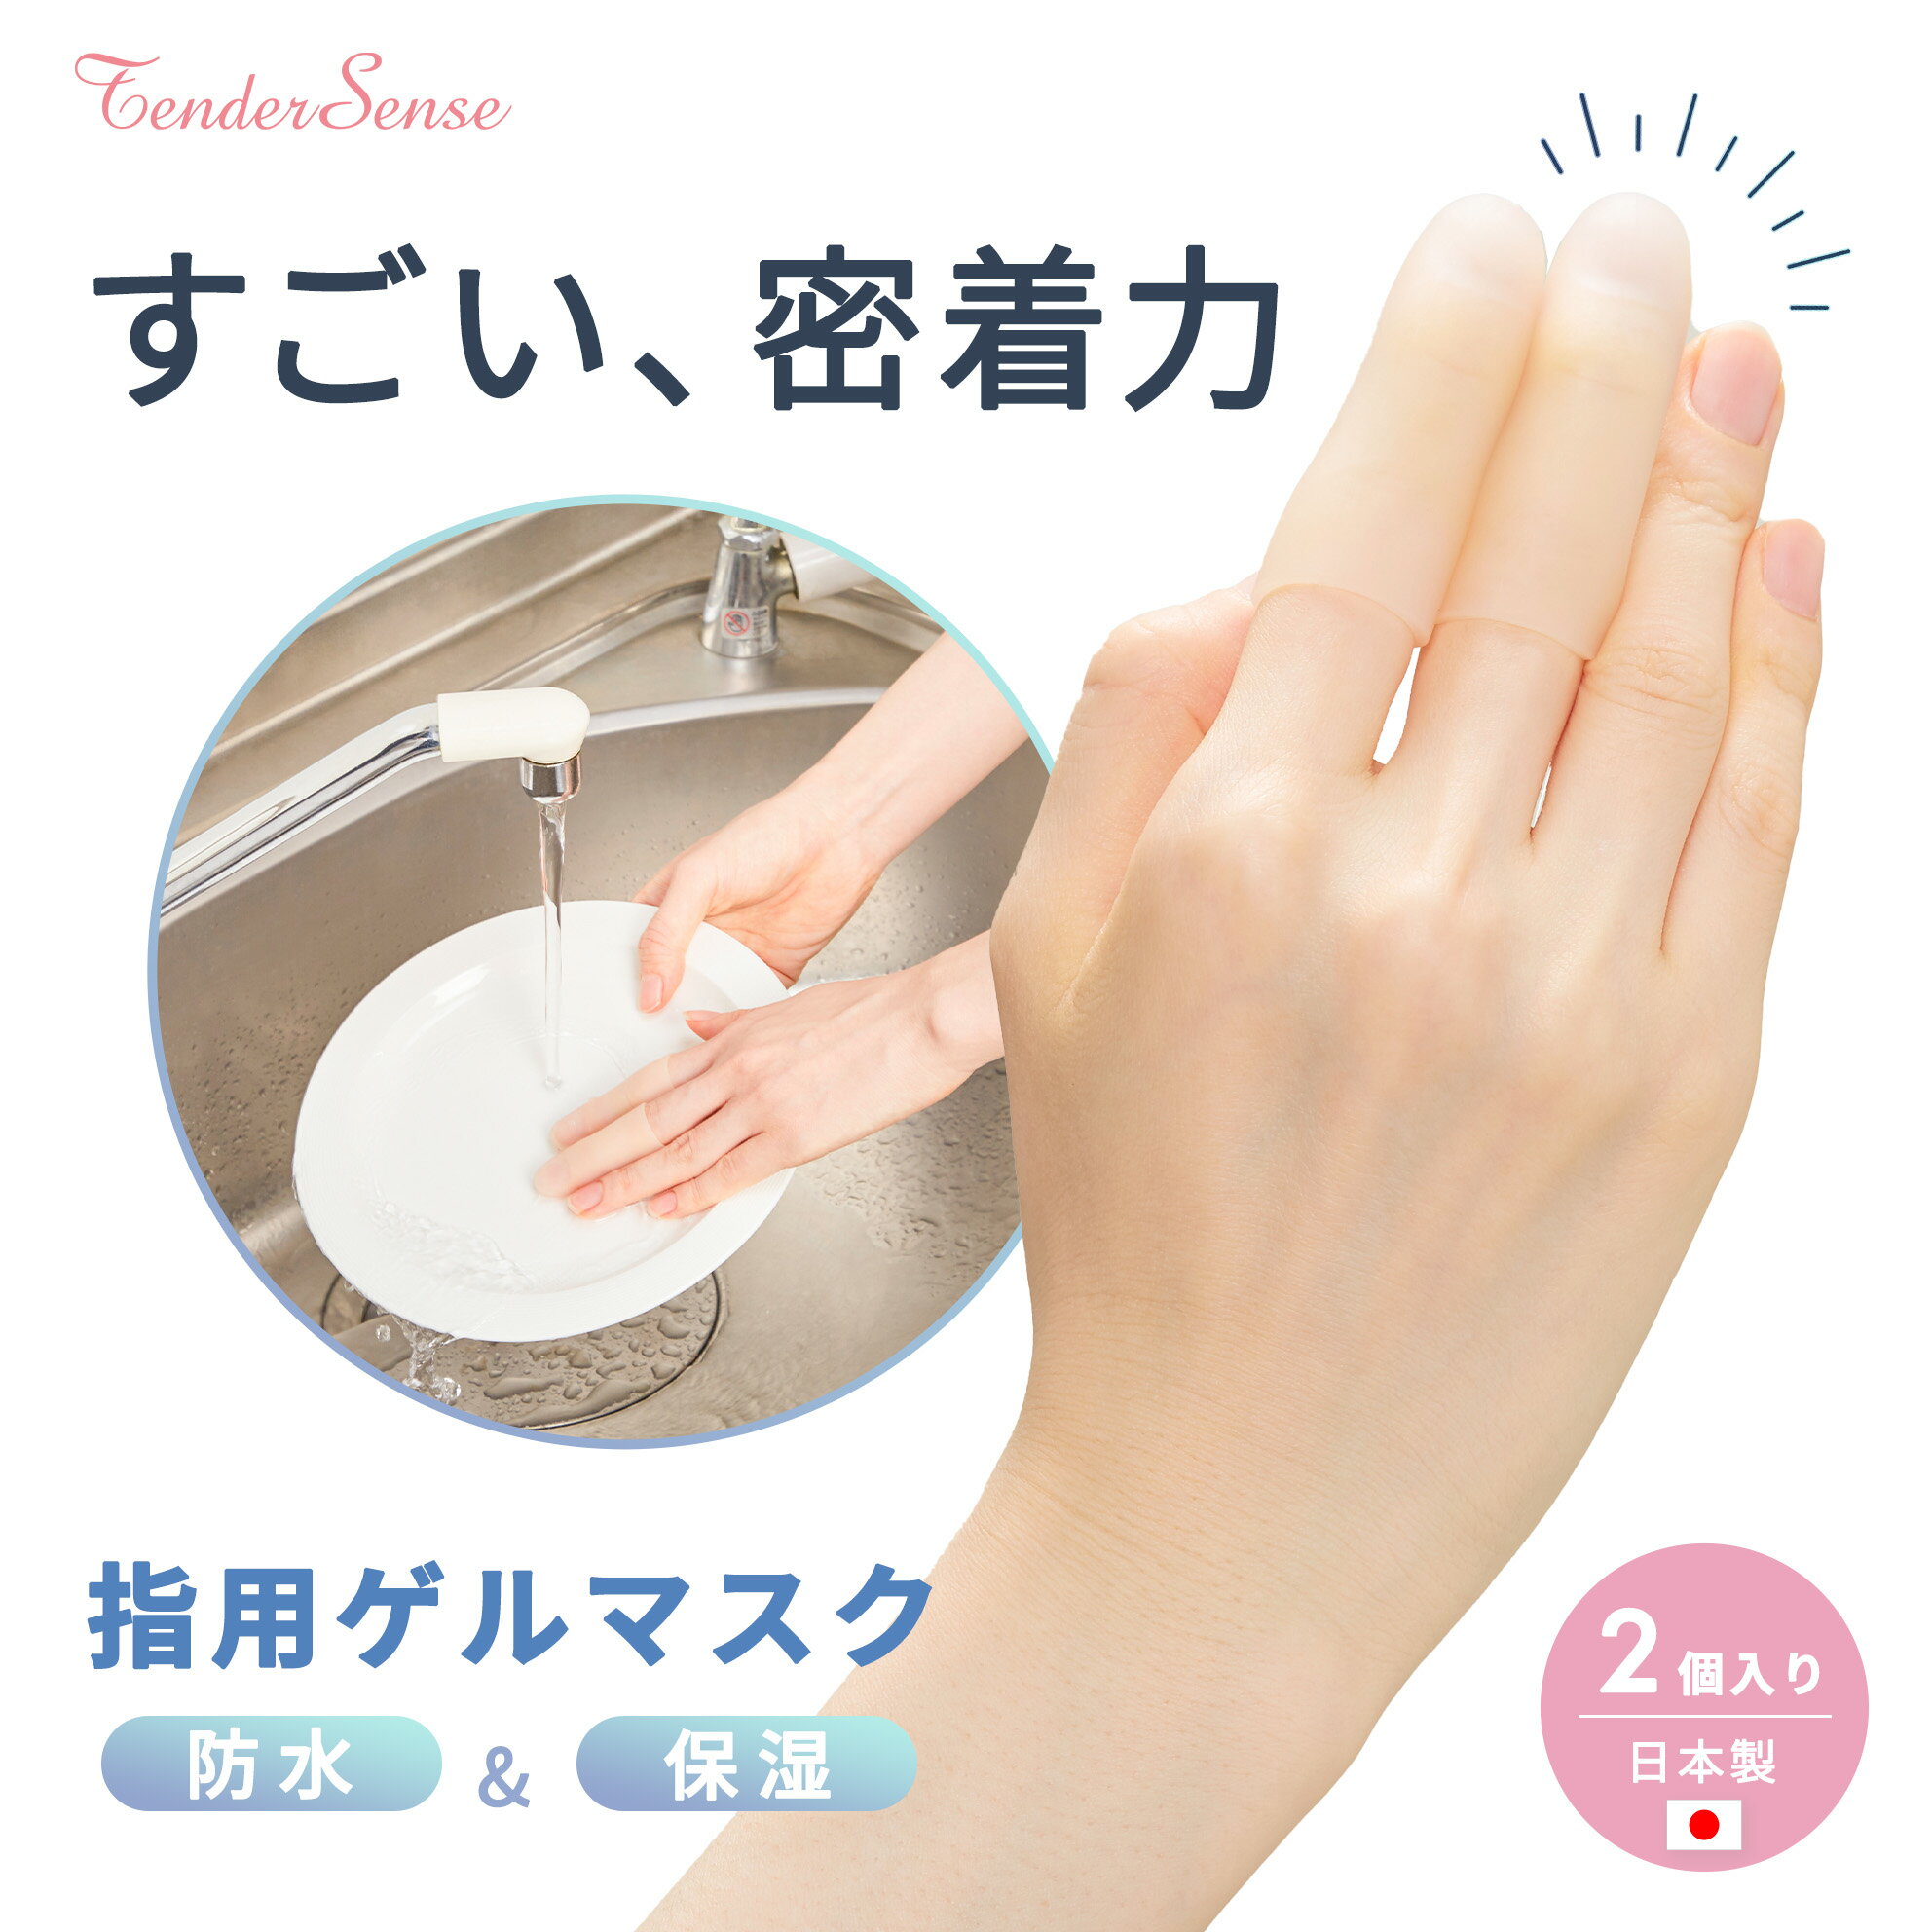 【タナック】日本製 洗って繰り返し使える 指用ゲルマスク 伸